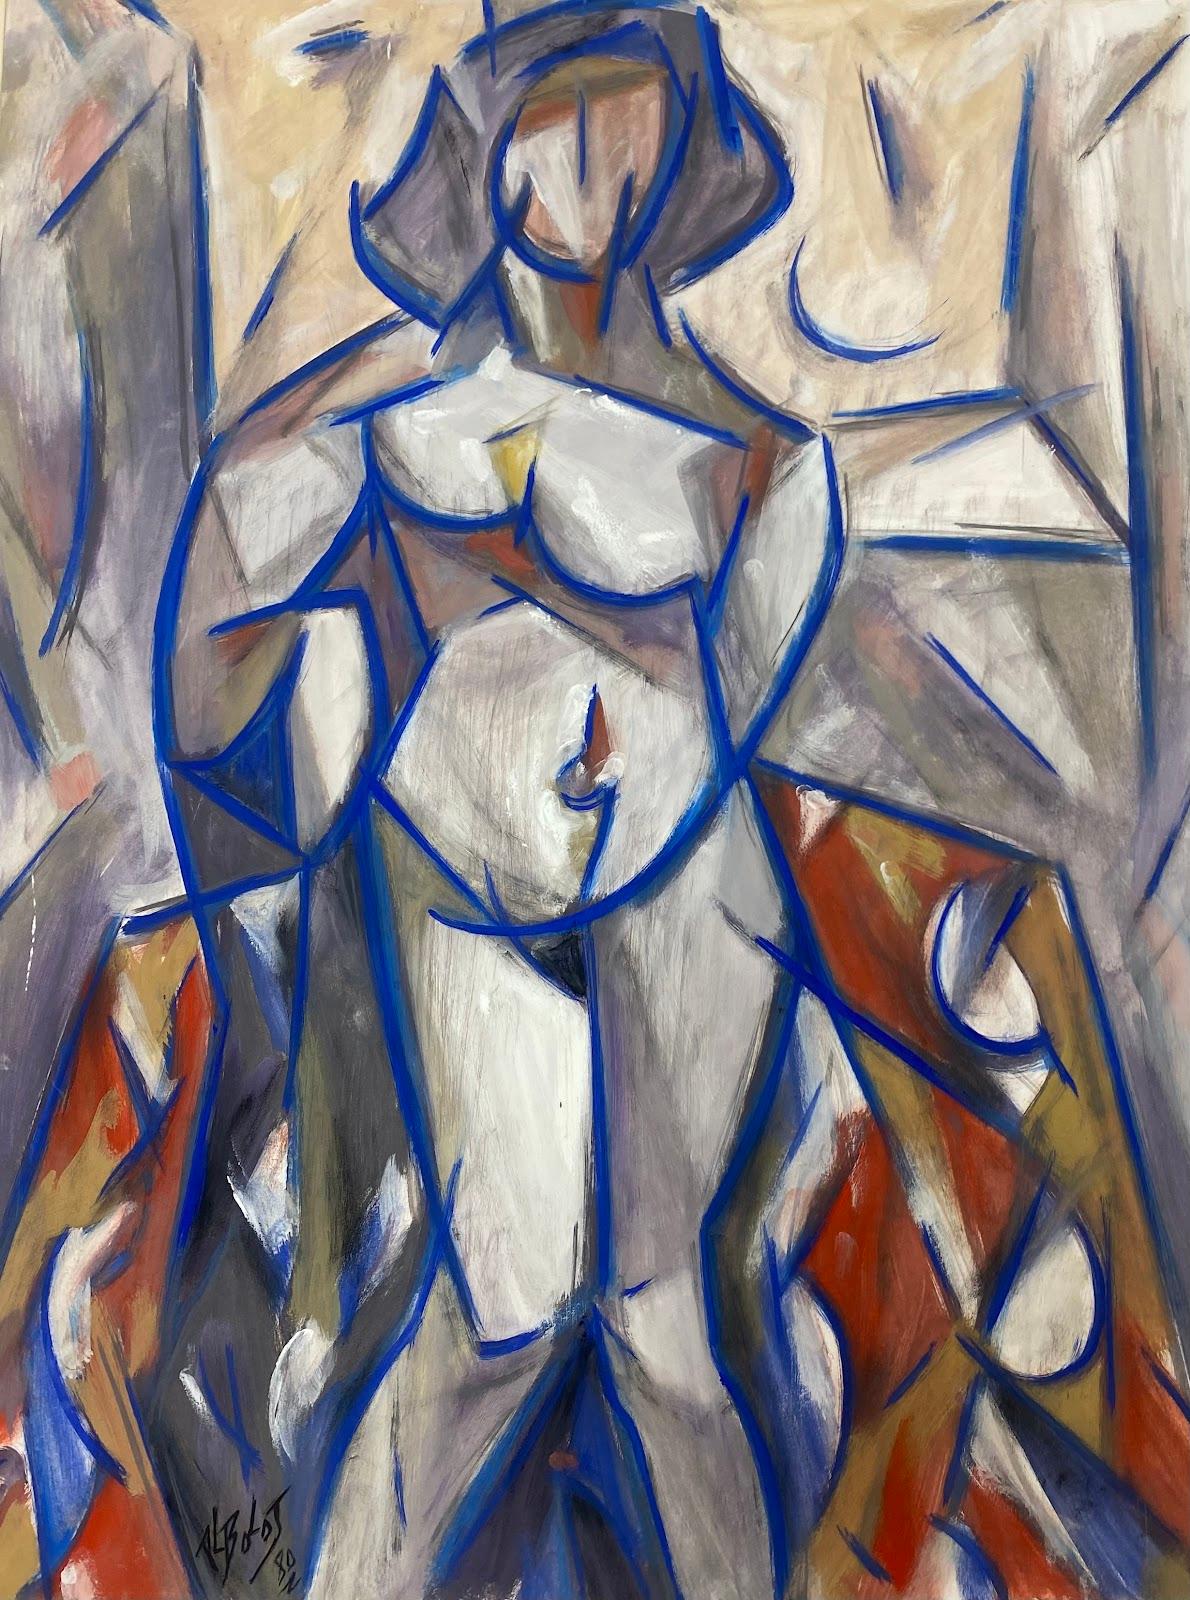 Peinture cubiste française du 20ème siècle représentant une femme nue et bleue abstraite